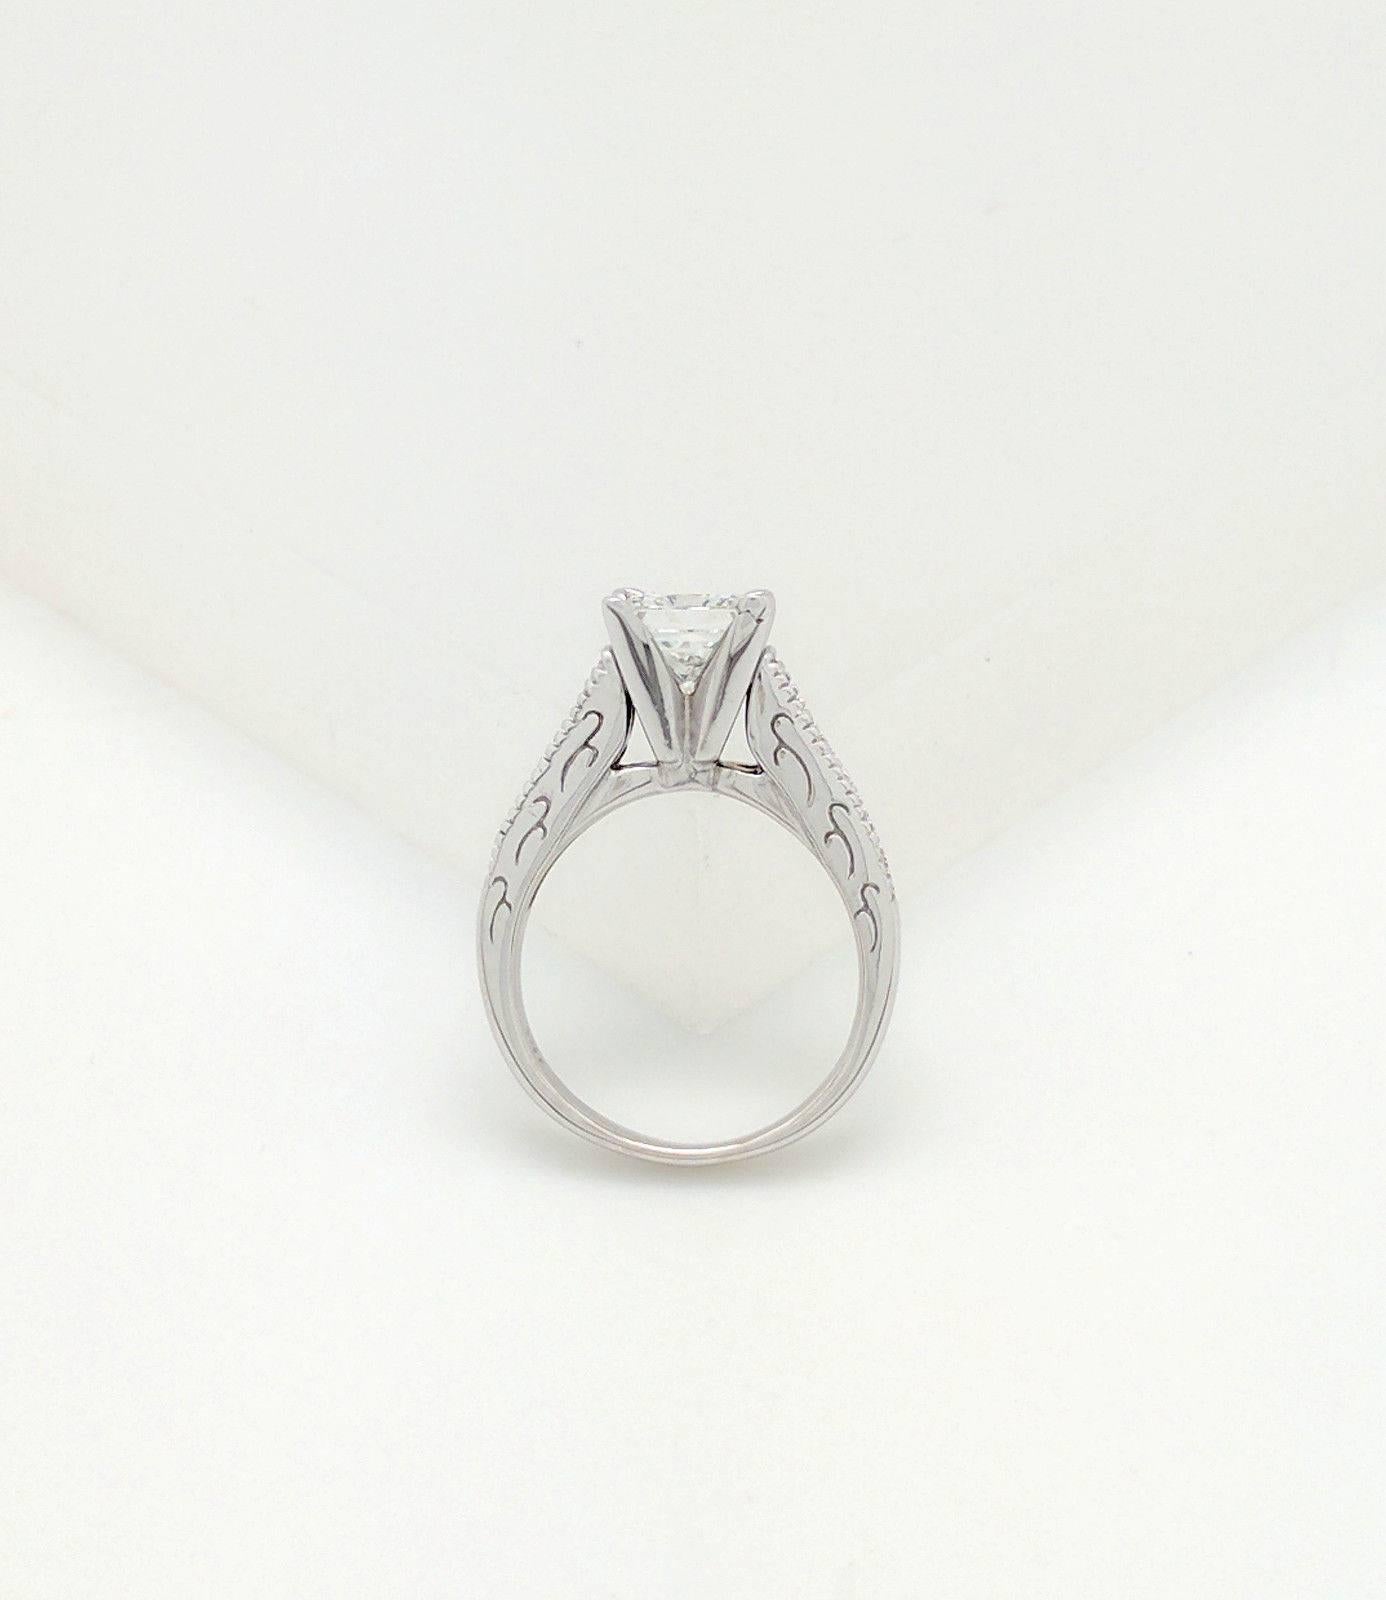 14 Karat White Gold 1.85 Carat Princess Cut Diamond Engagement Ring VS2/H 4